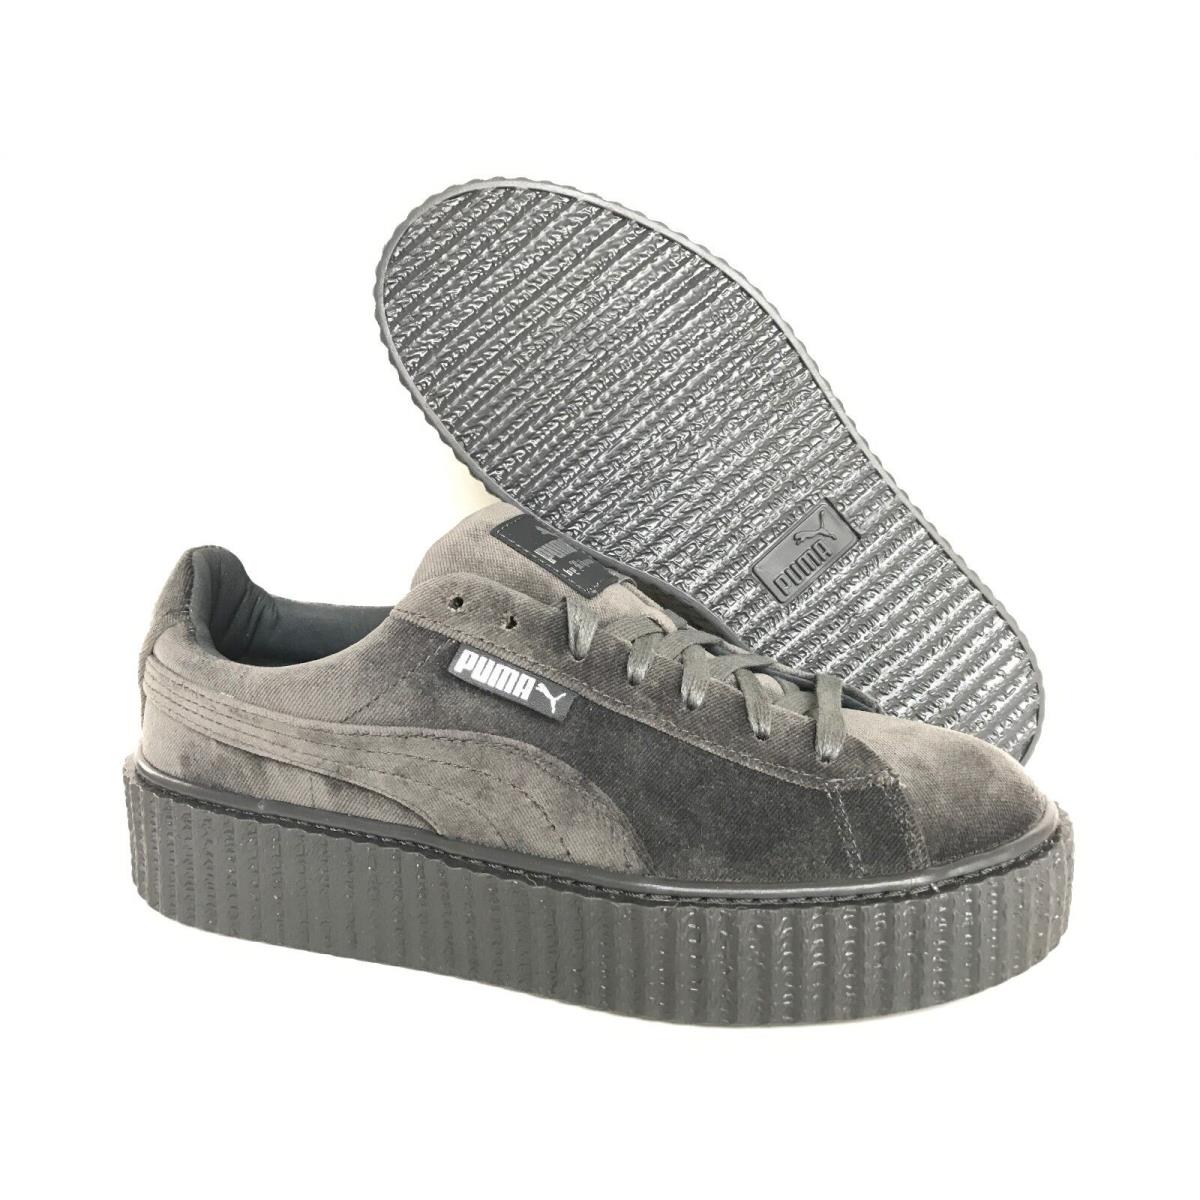 Puma Fenty Rihanna Creepers Velvet Glacier Gray Women`s Shoes All Sizes